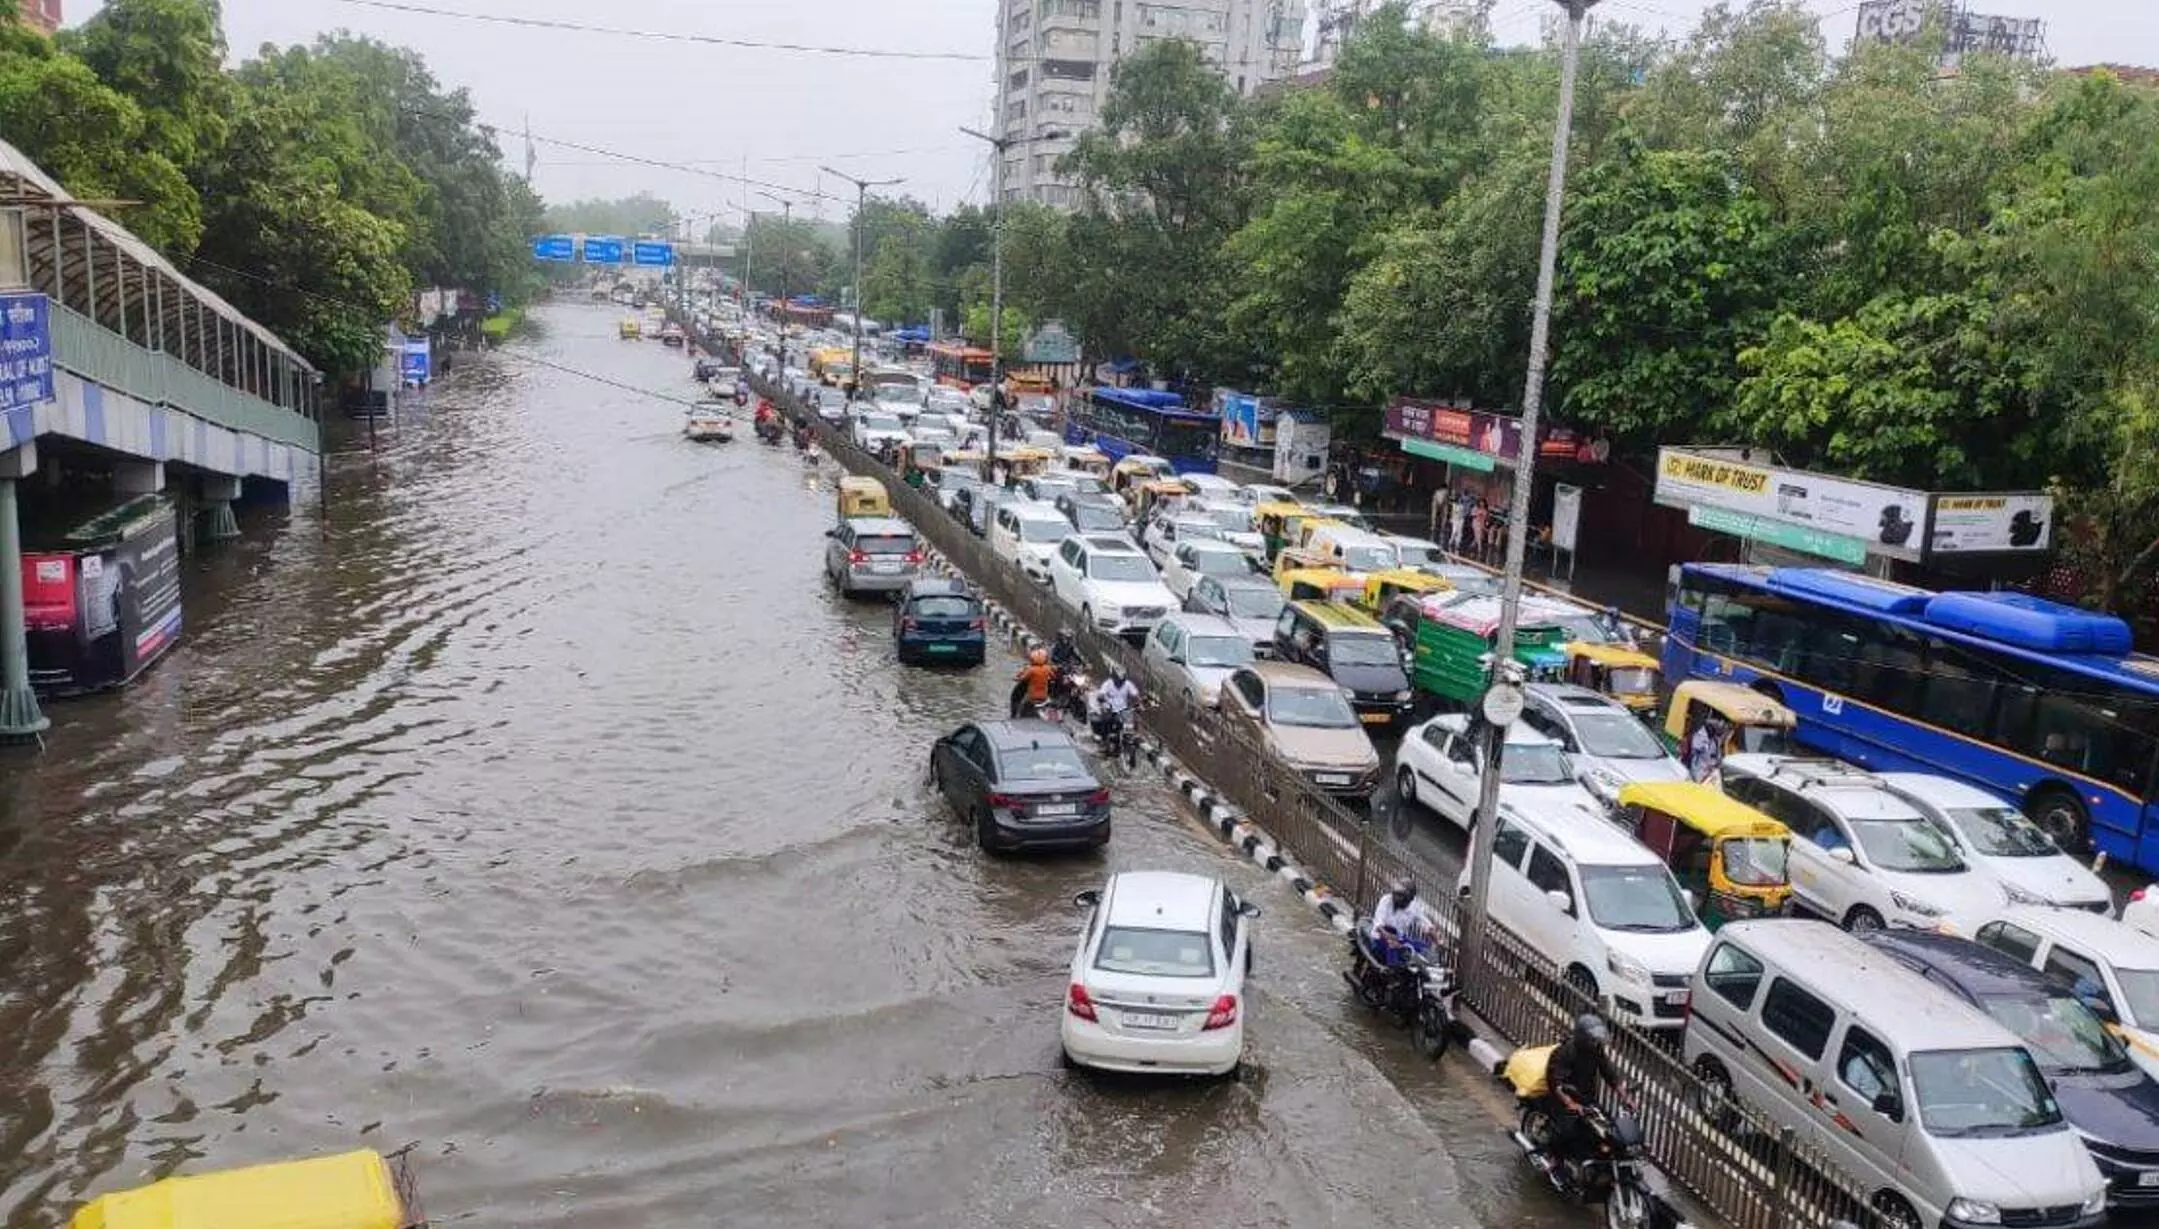 Delhi Rain: दिल्ली में बारिश ने तोड़ा 88 सालों का रिकॉर्ड, मौसम विभाग की चेतावनी ने डराया